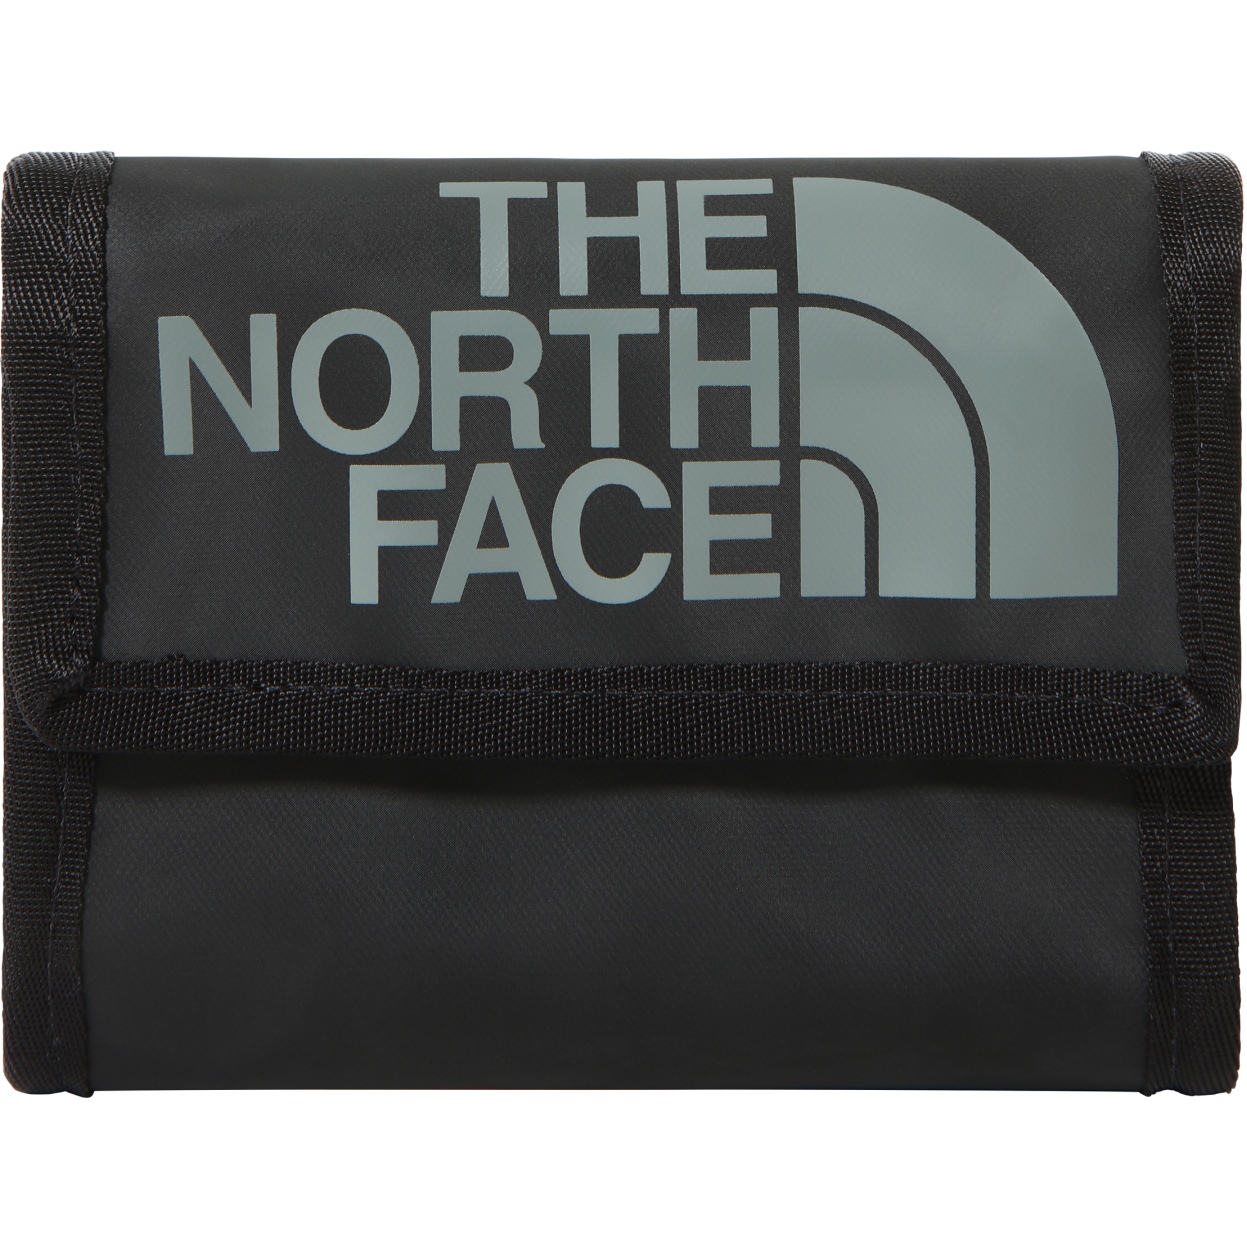 Produktbild von The North Face Base Camp Geldbeutel - TNF Black